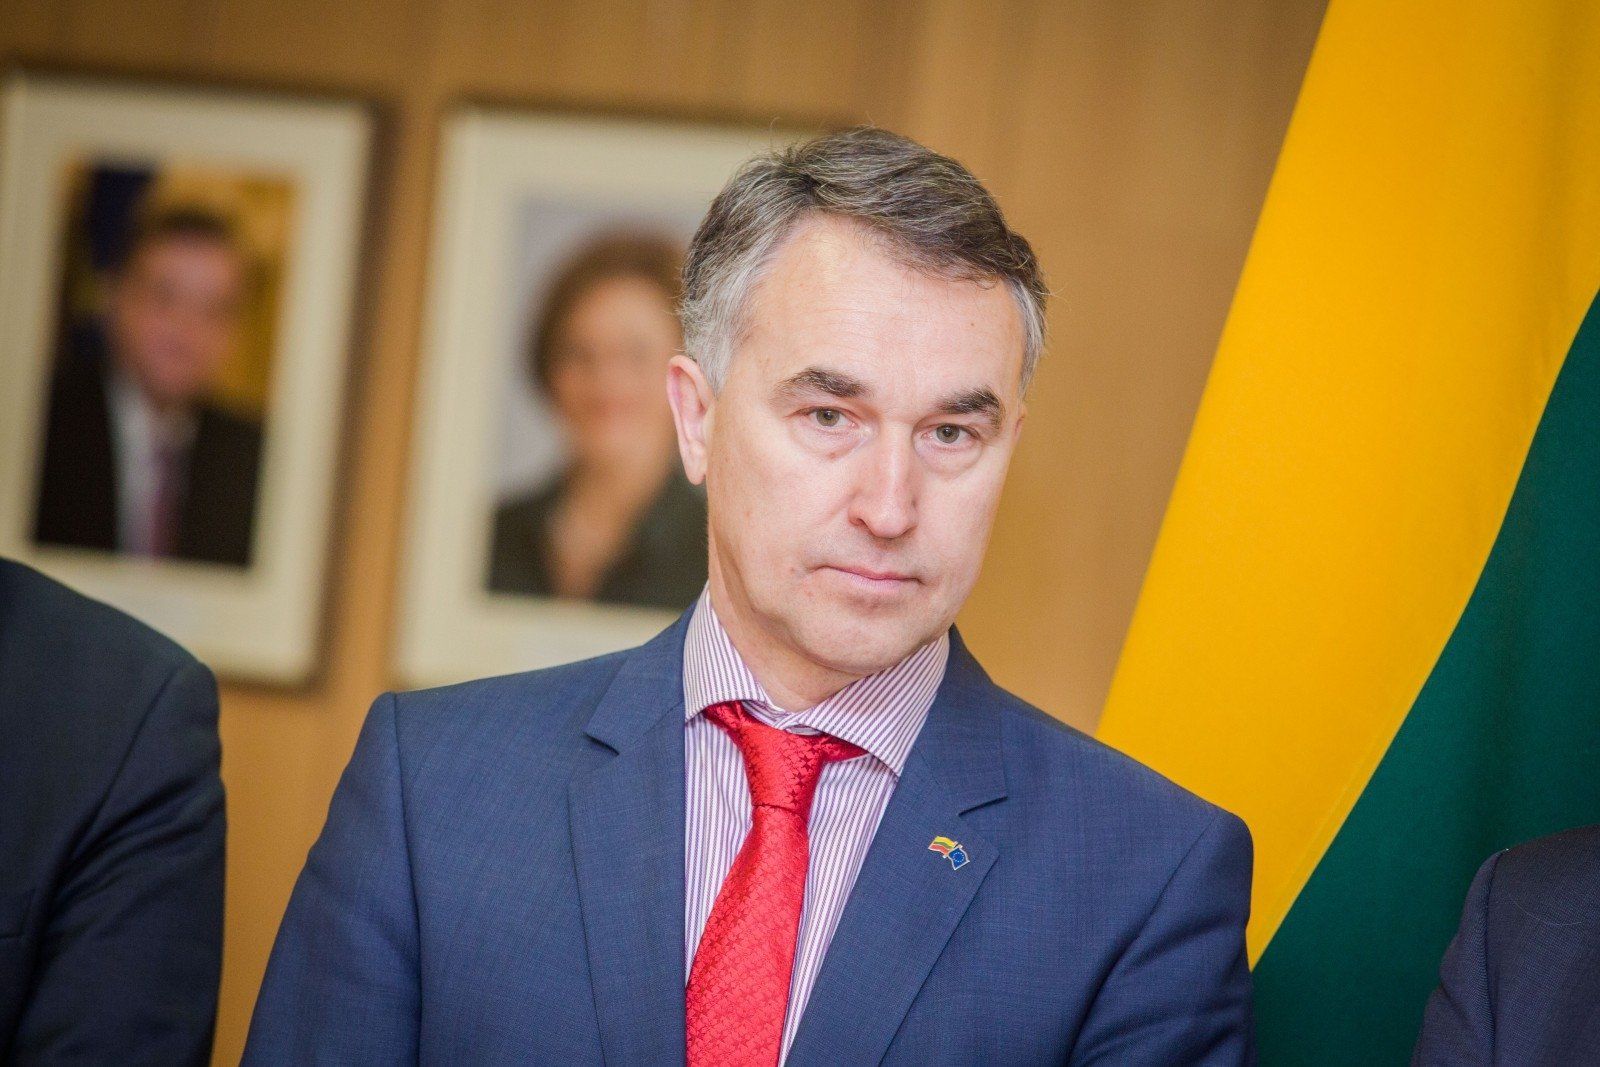 Депутат ЕП от Литвы Пятрас Аушрявичюс